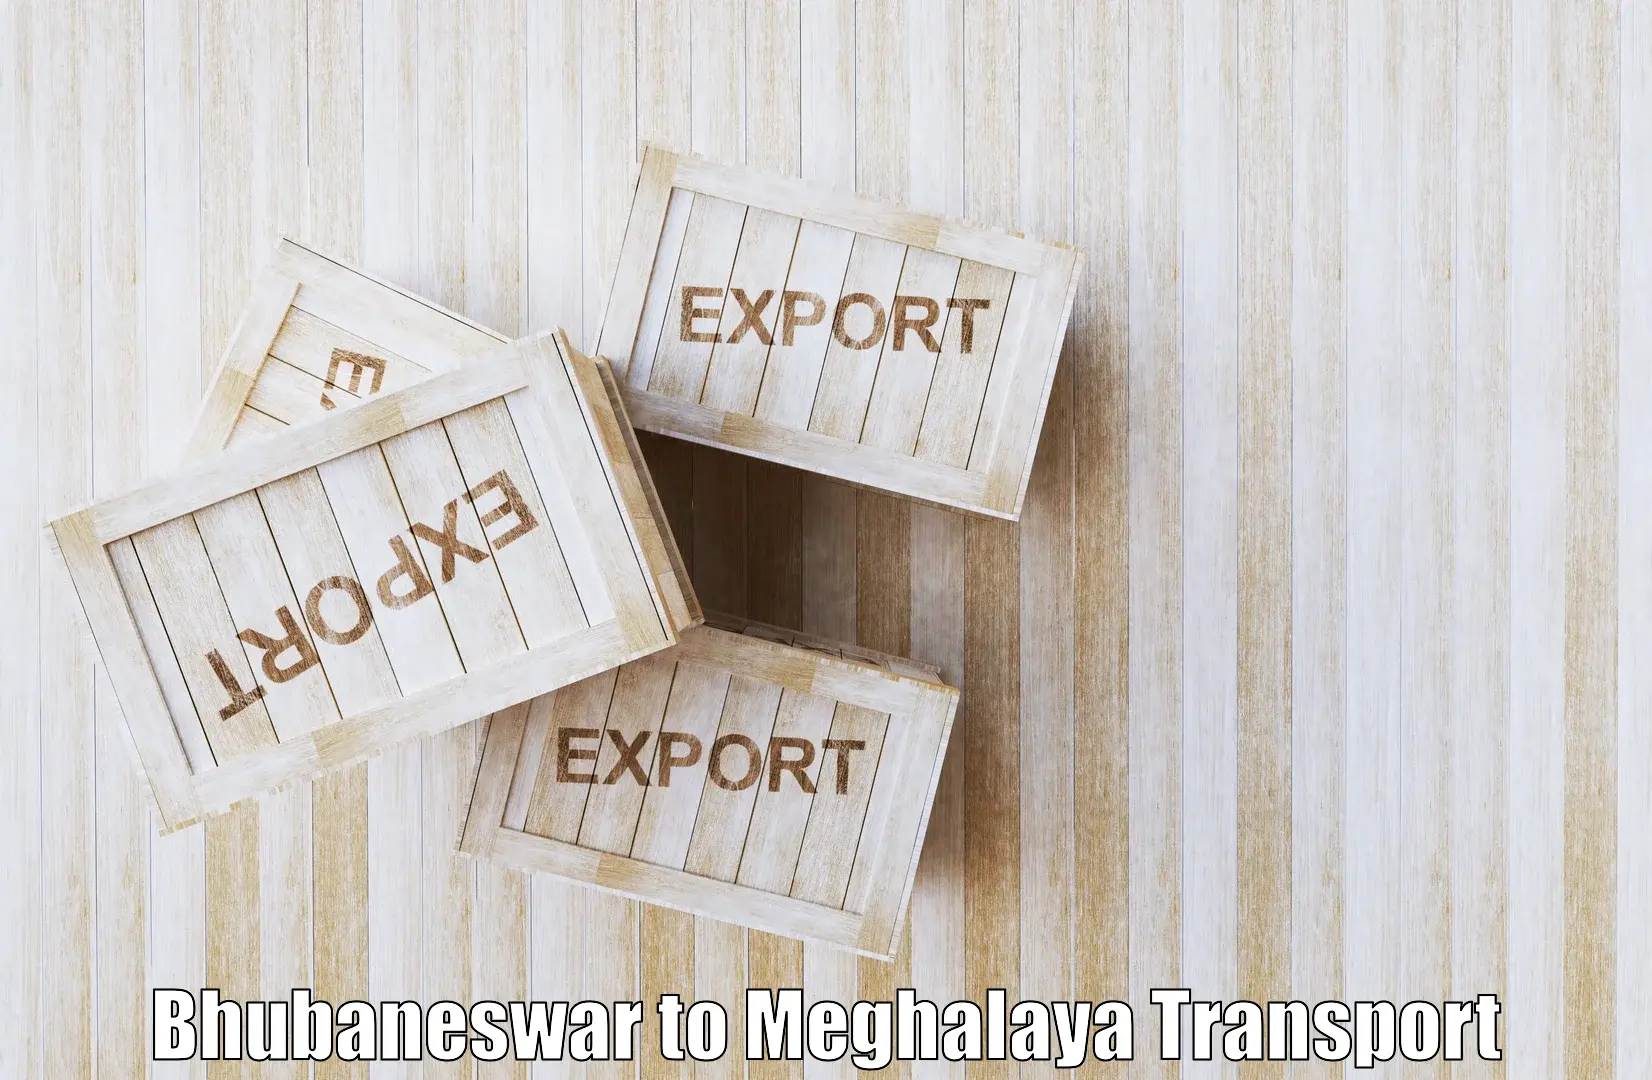 Parcel transport services Bhubaneswar to Meghalaya